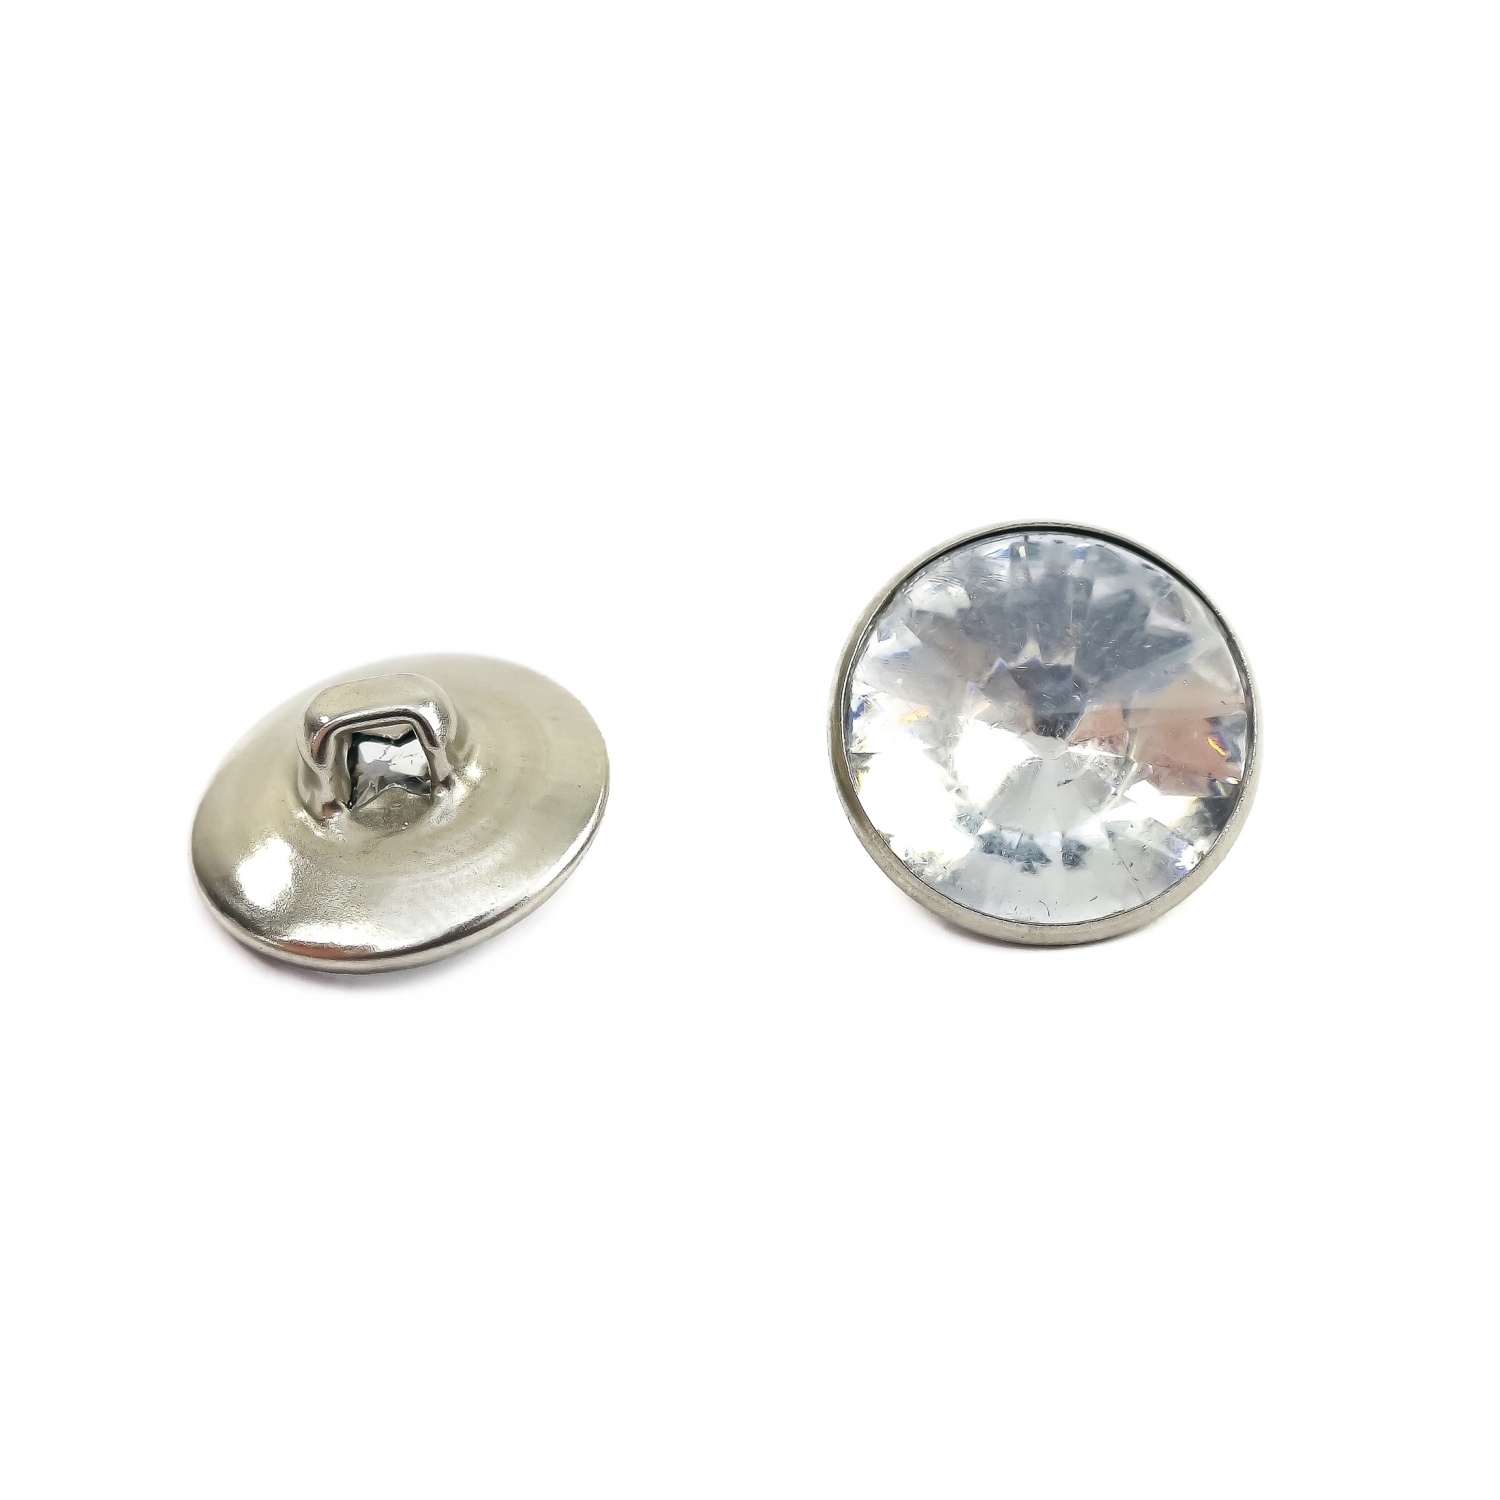 Rhinestone Button, 20 mm (100pcs/bag)Code: Y10815